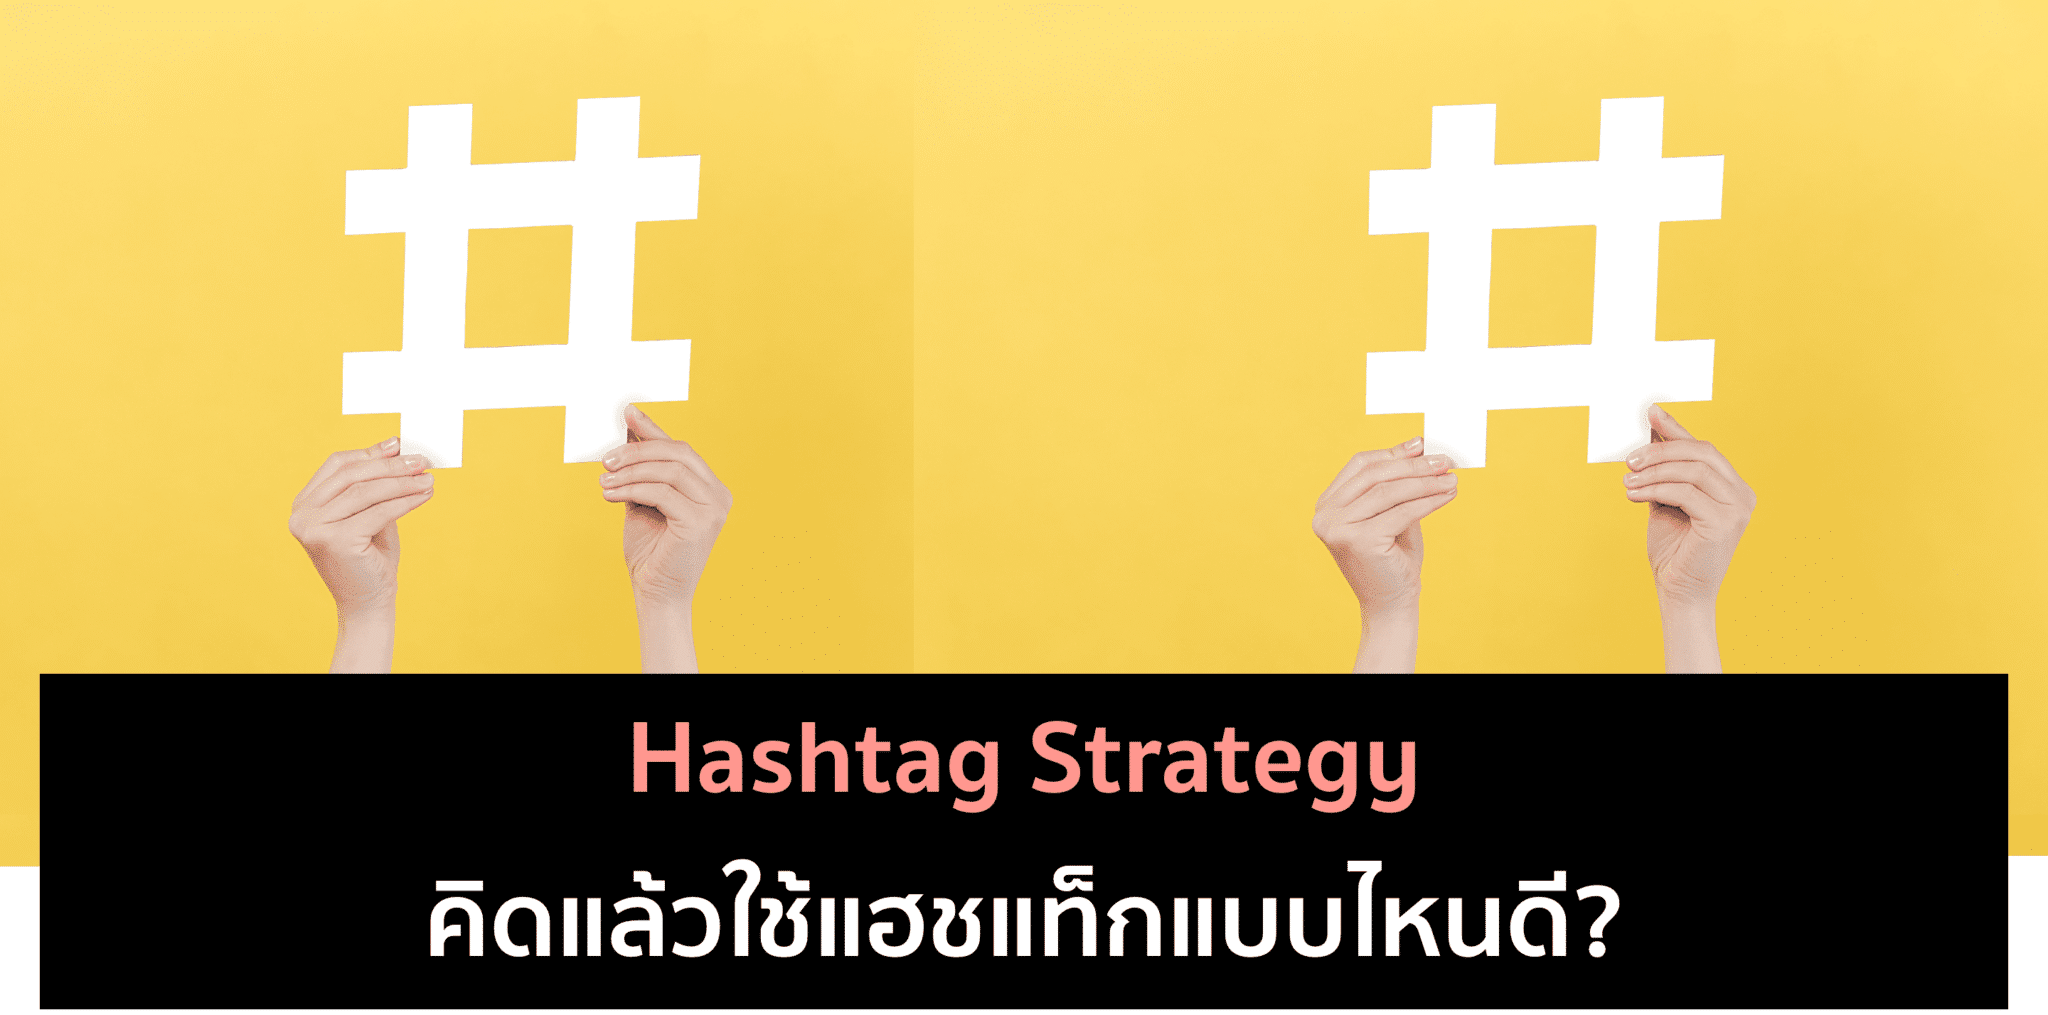 Hashtag Strategy สร้างแฮชแท็กยังไงให้เกิดประโยชน์